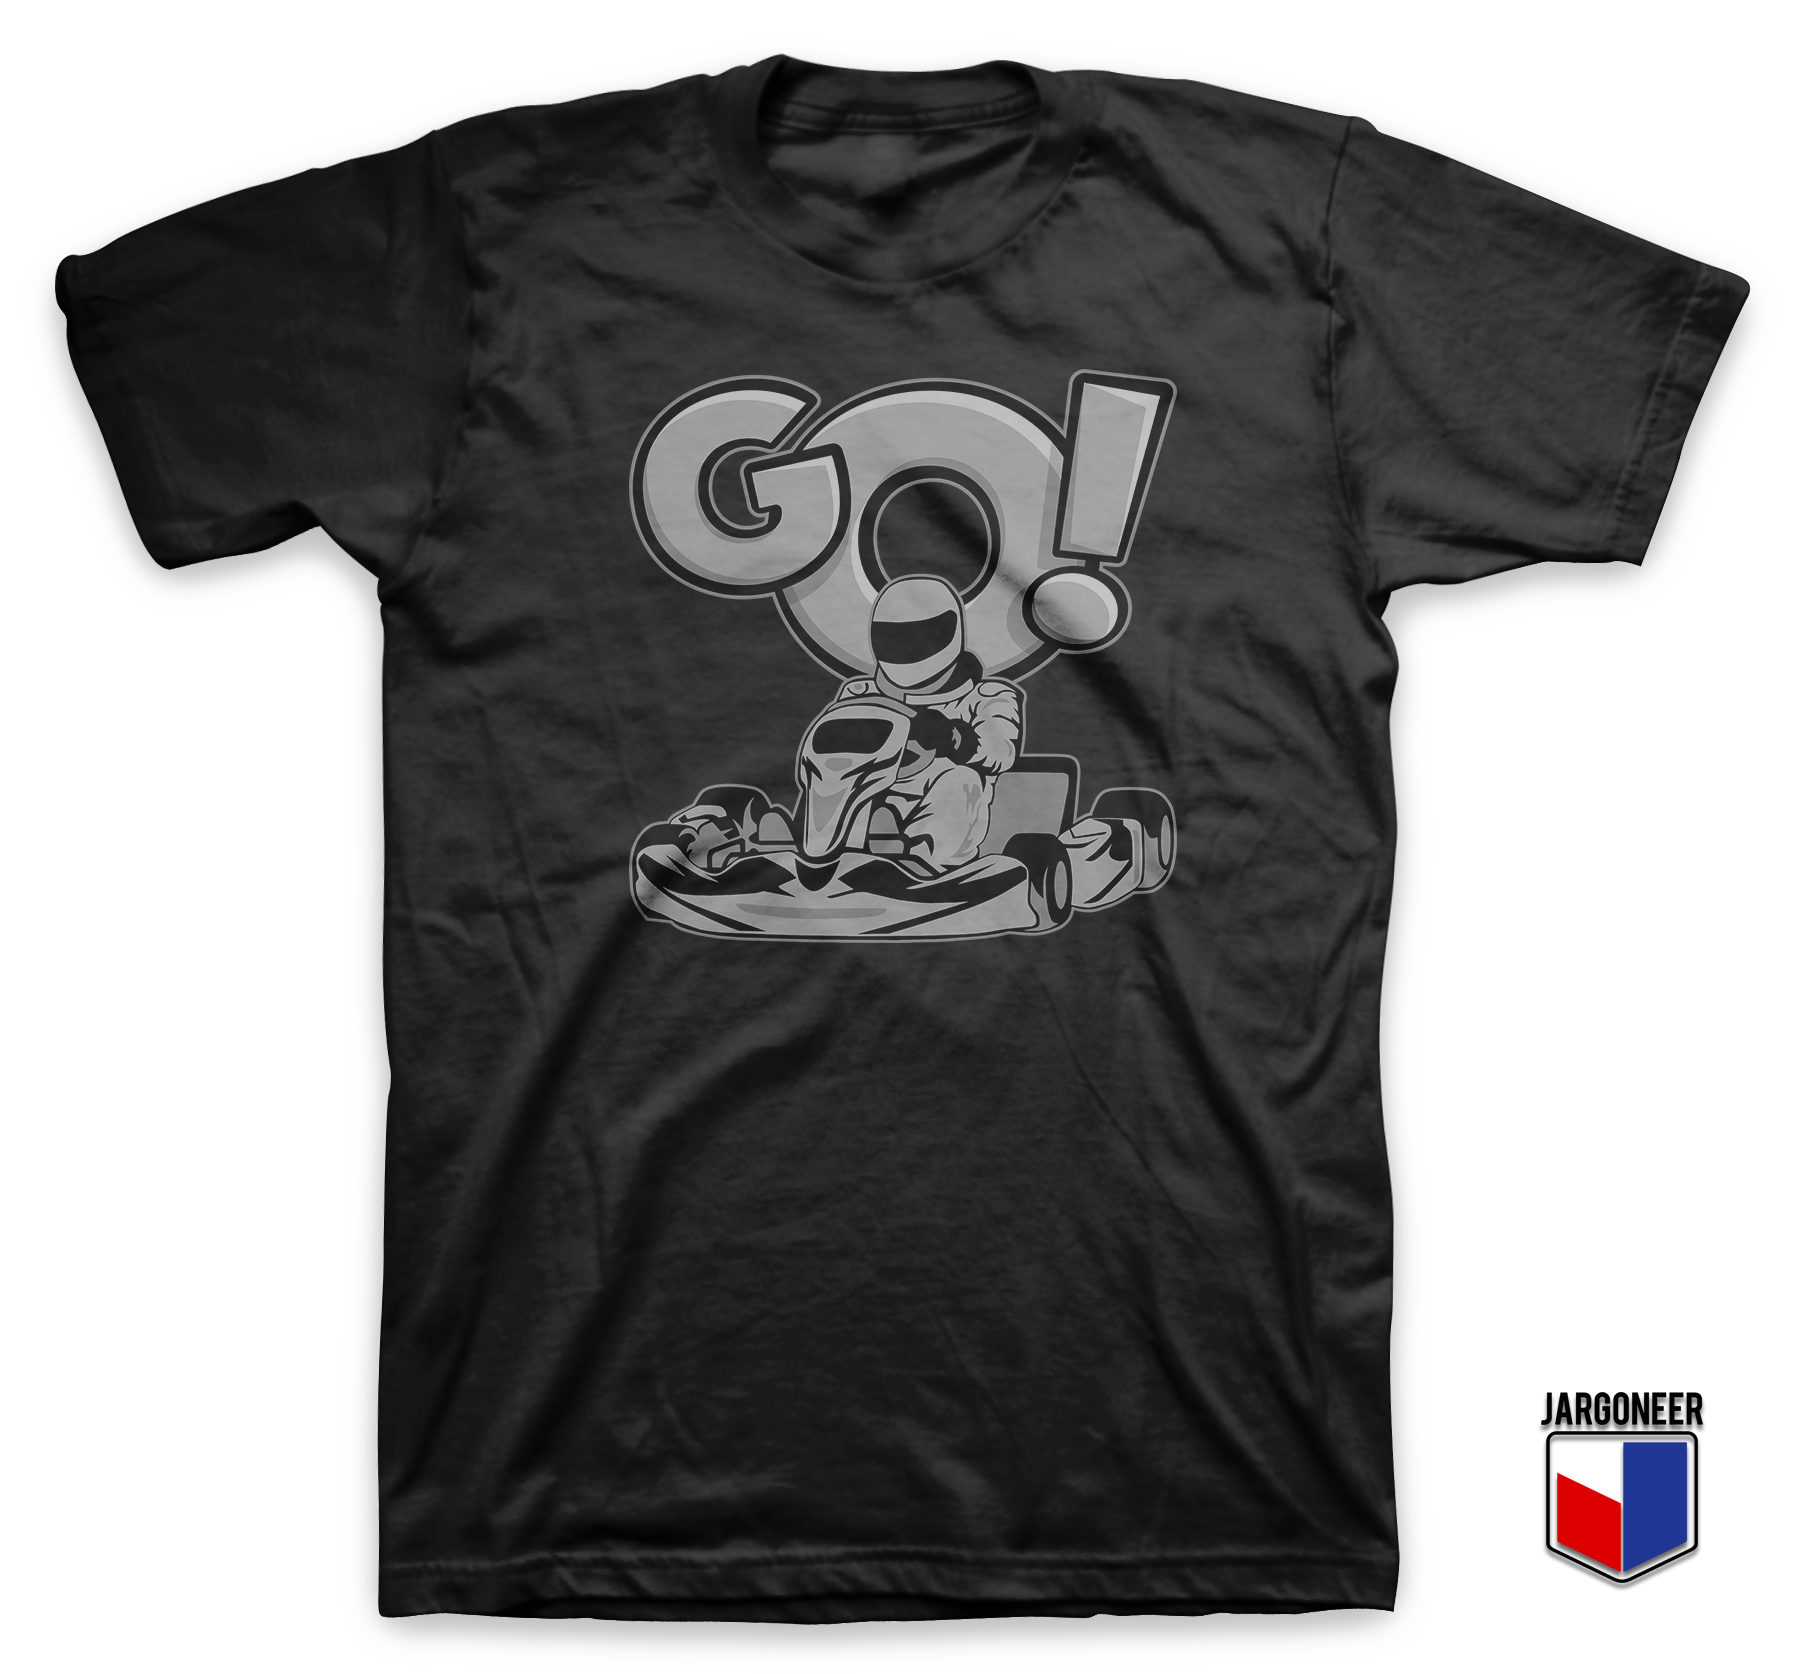 Go Karting Black T Shirt - Shop Unique Graphic Cool Shirt Designs